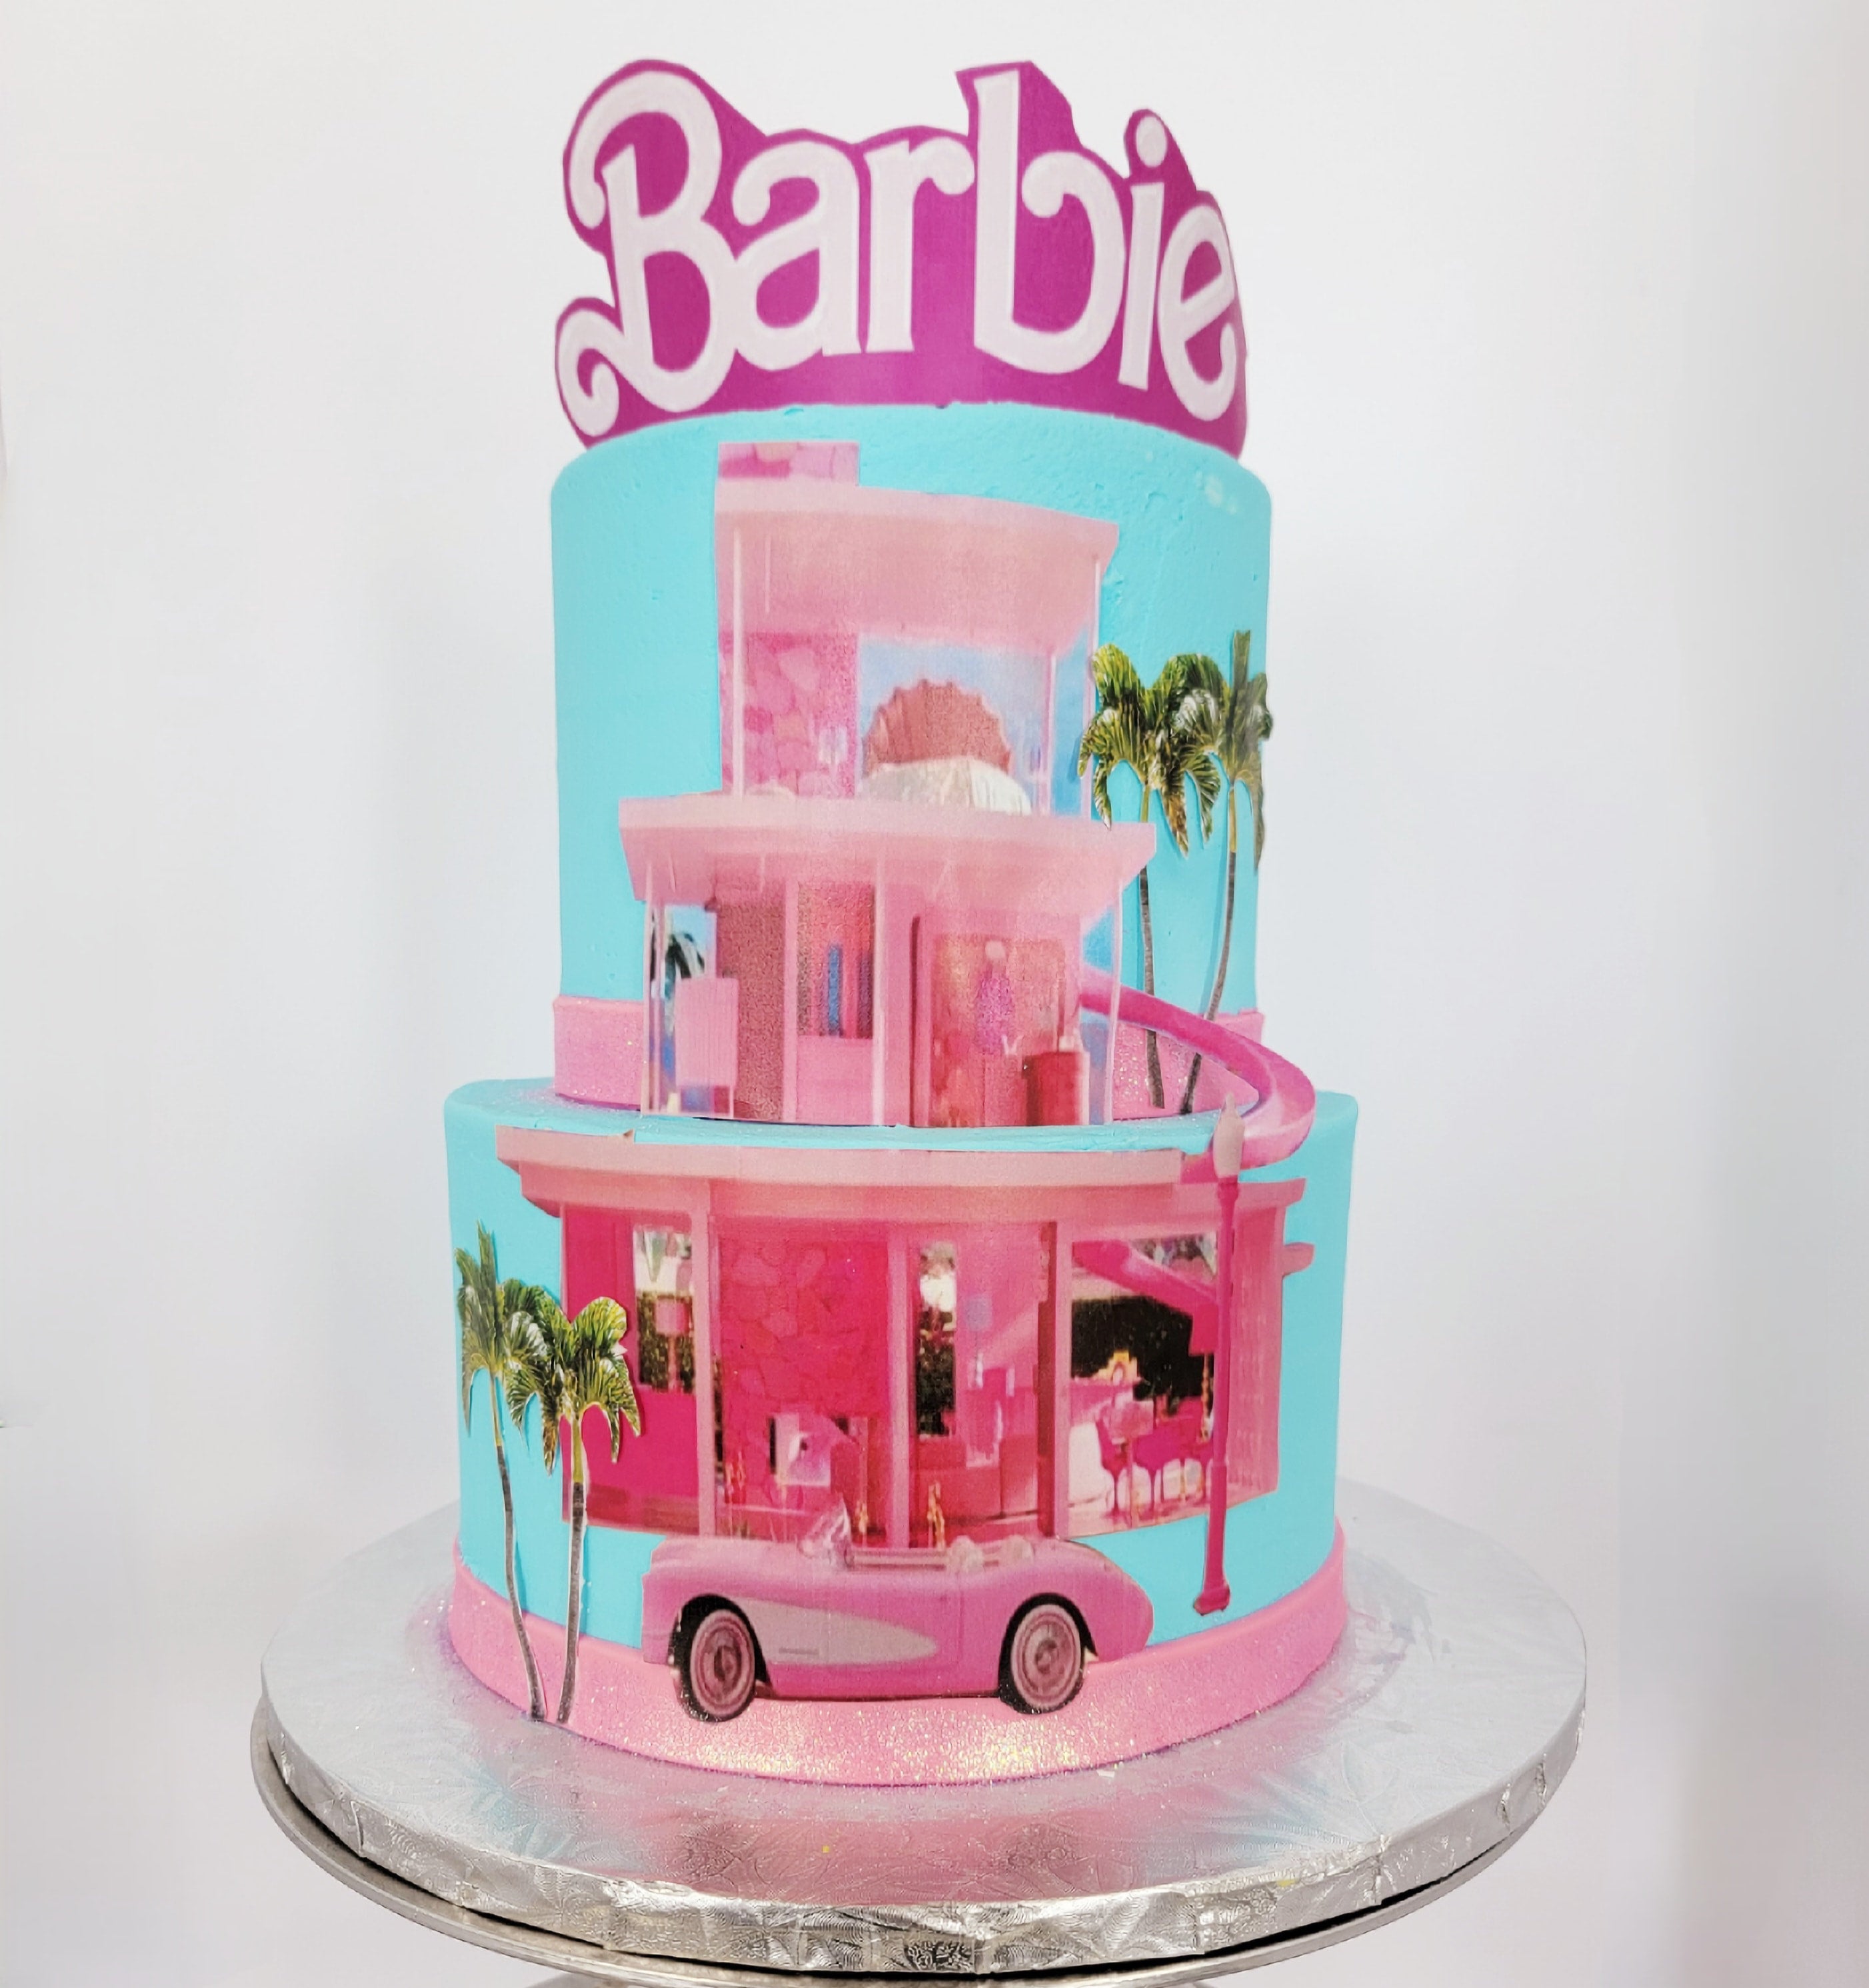 Barbie cake 💕💕 Commande du jour 🎂 Soyez les bienvenus chez  @le_gout_de_ikram🌹🌹 #barbie #layercake #patisserie #cakeart  #cakedecorating… | Instagram